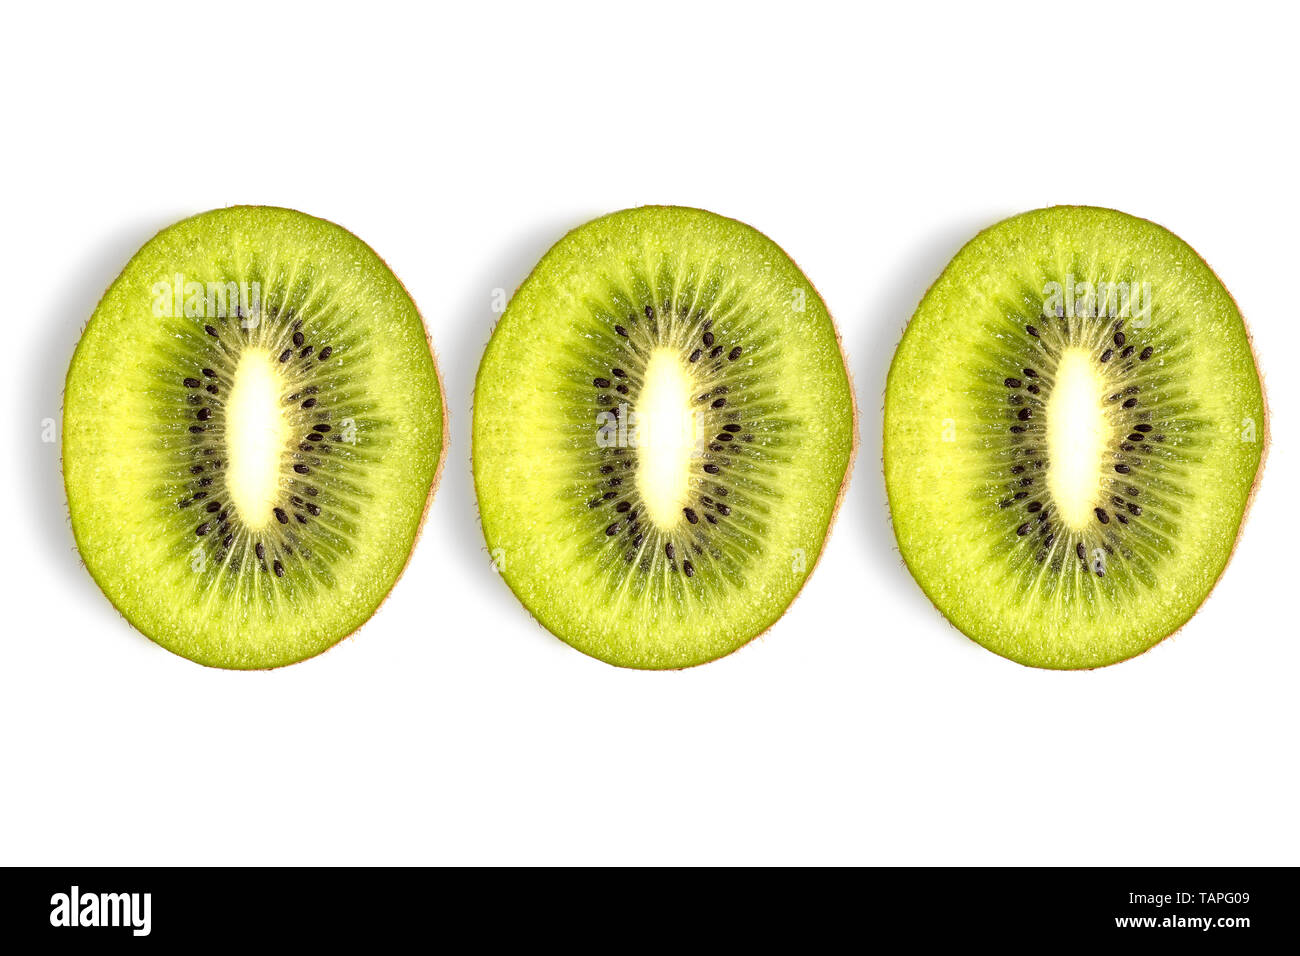 kiwi fruit sliced pattern on white background Stock Photo